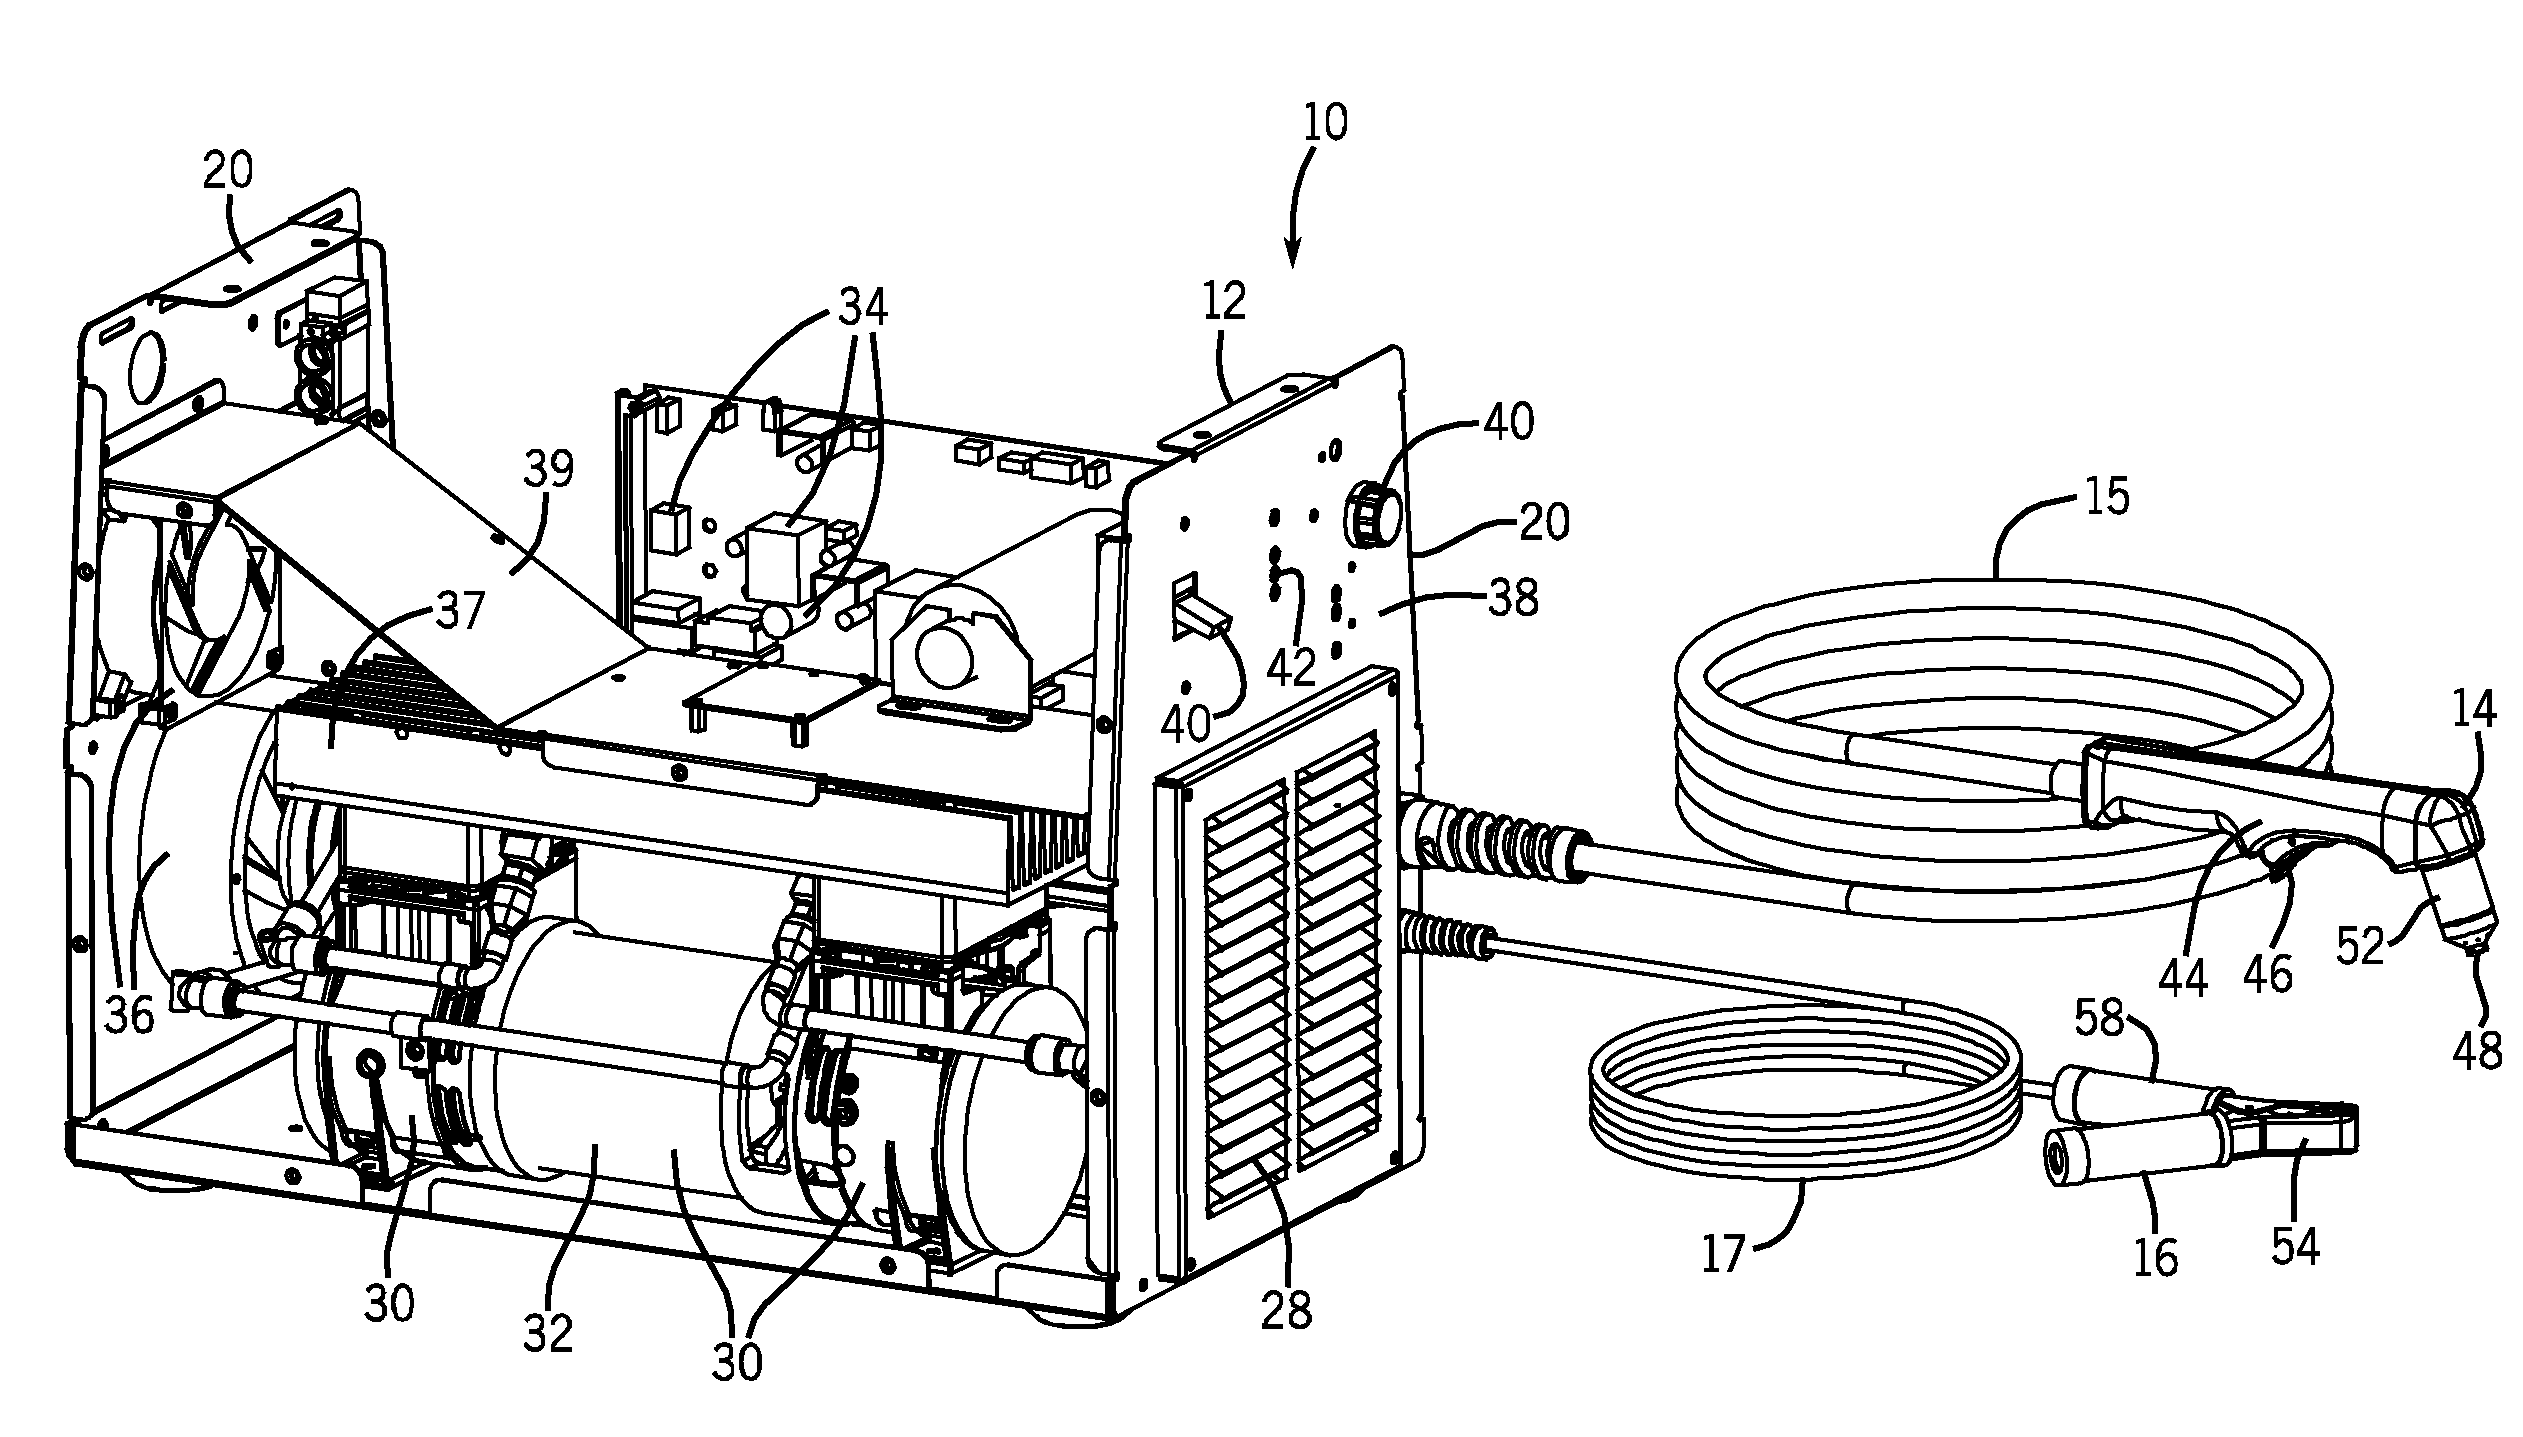 Multi-Stage Compressor in a Plasma Cutter